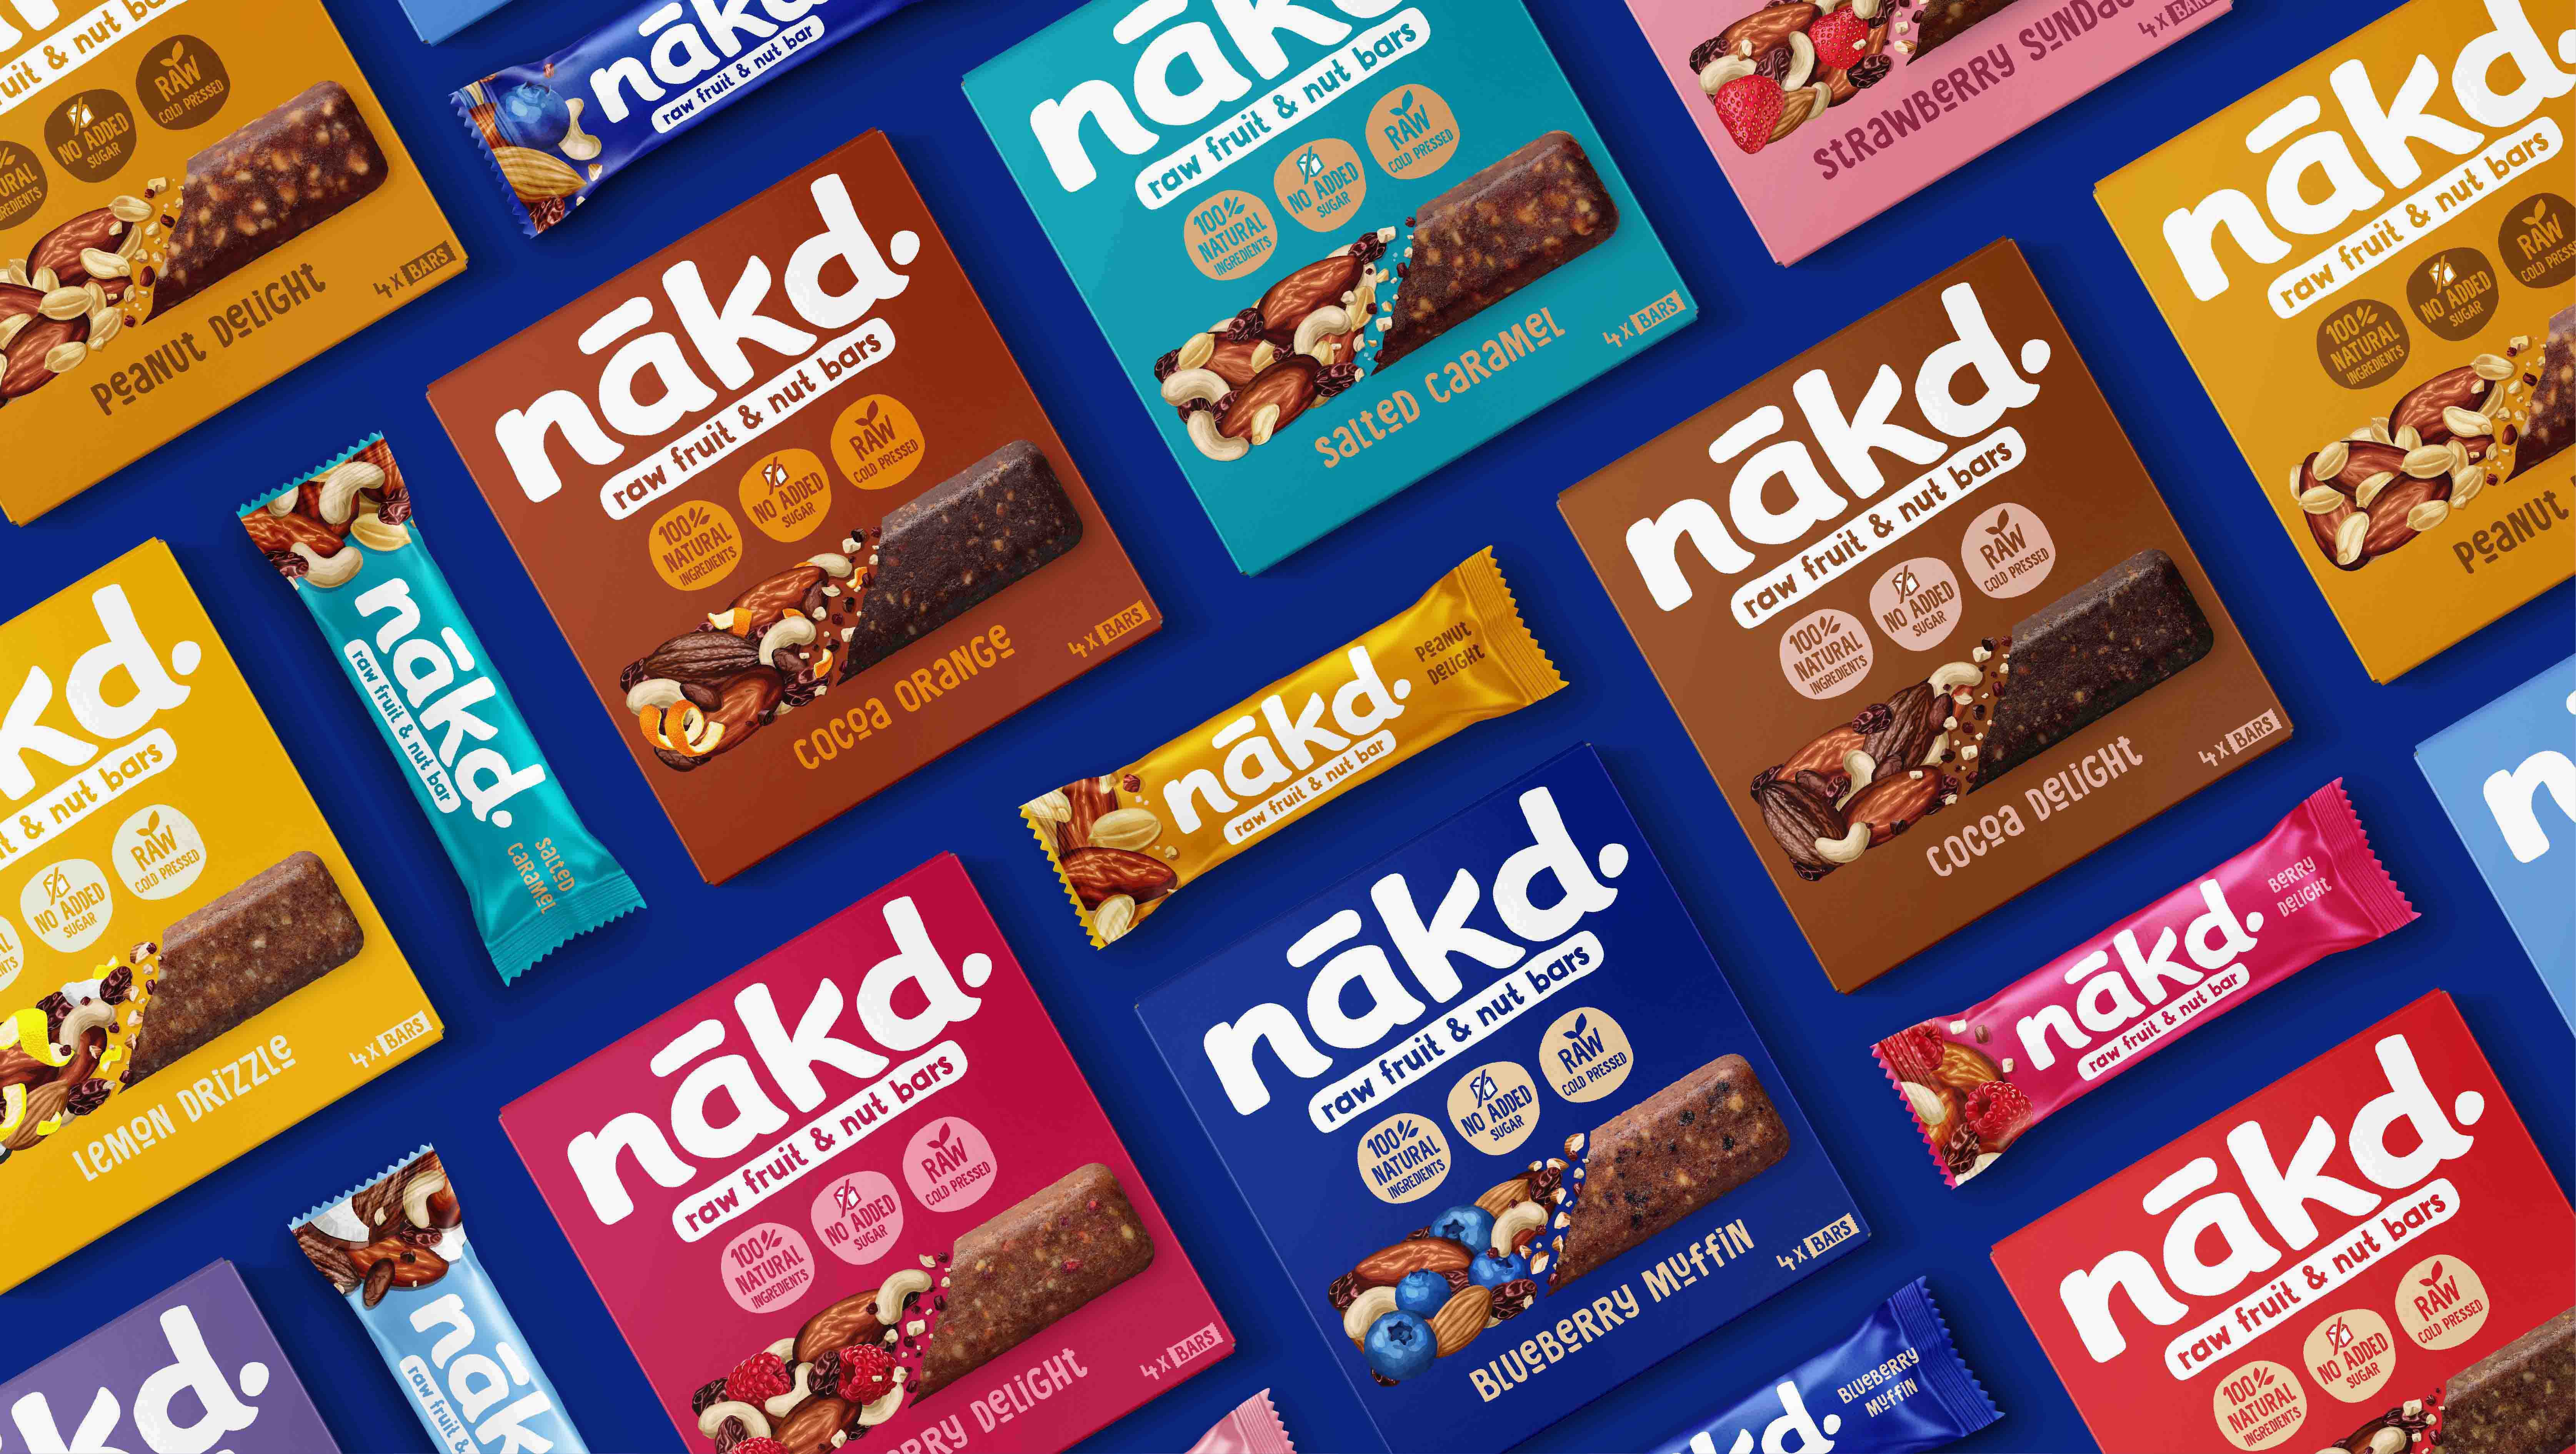 BrandMe Creates Brand Identity for Snack Brand Nākd